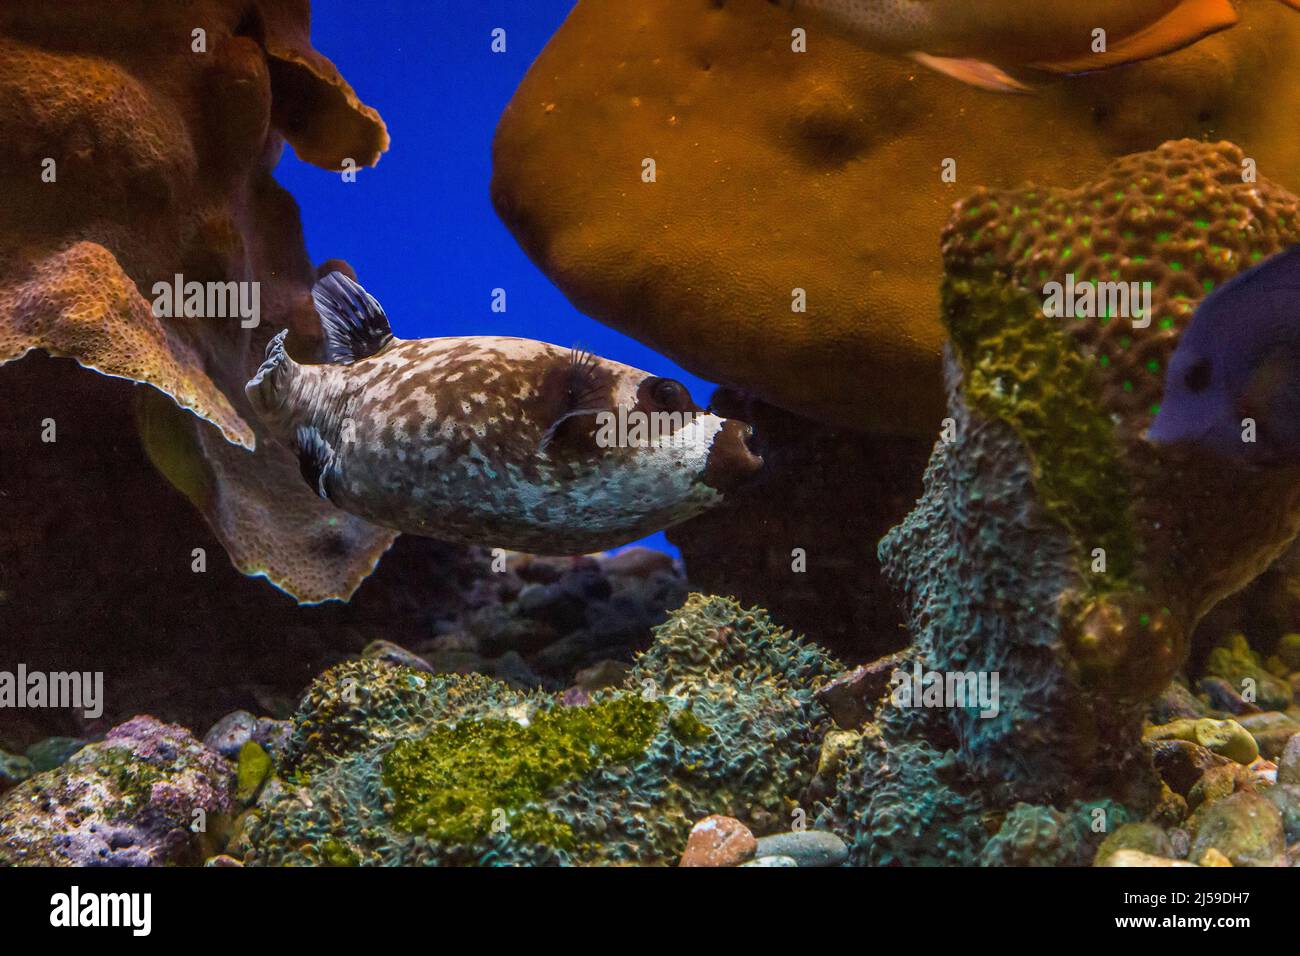 Es ist ein Fisch in einem Aquarium, Masked Puffer genannt und lebt in der Natur auf Korallenriffen. Stockfoto